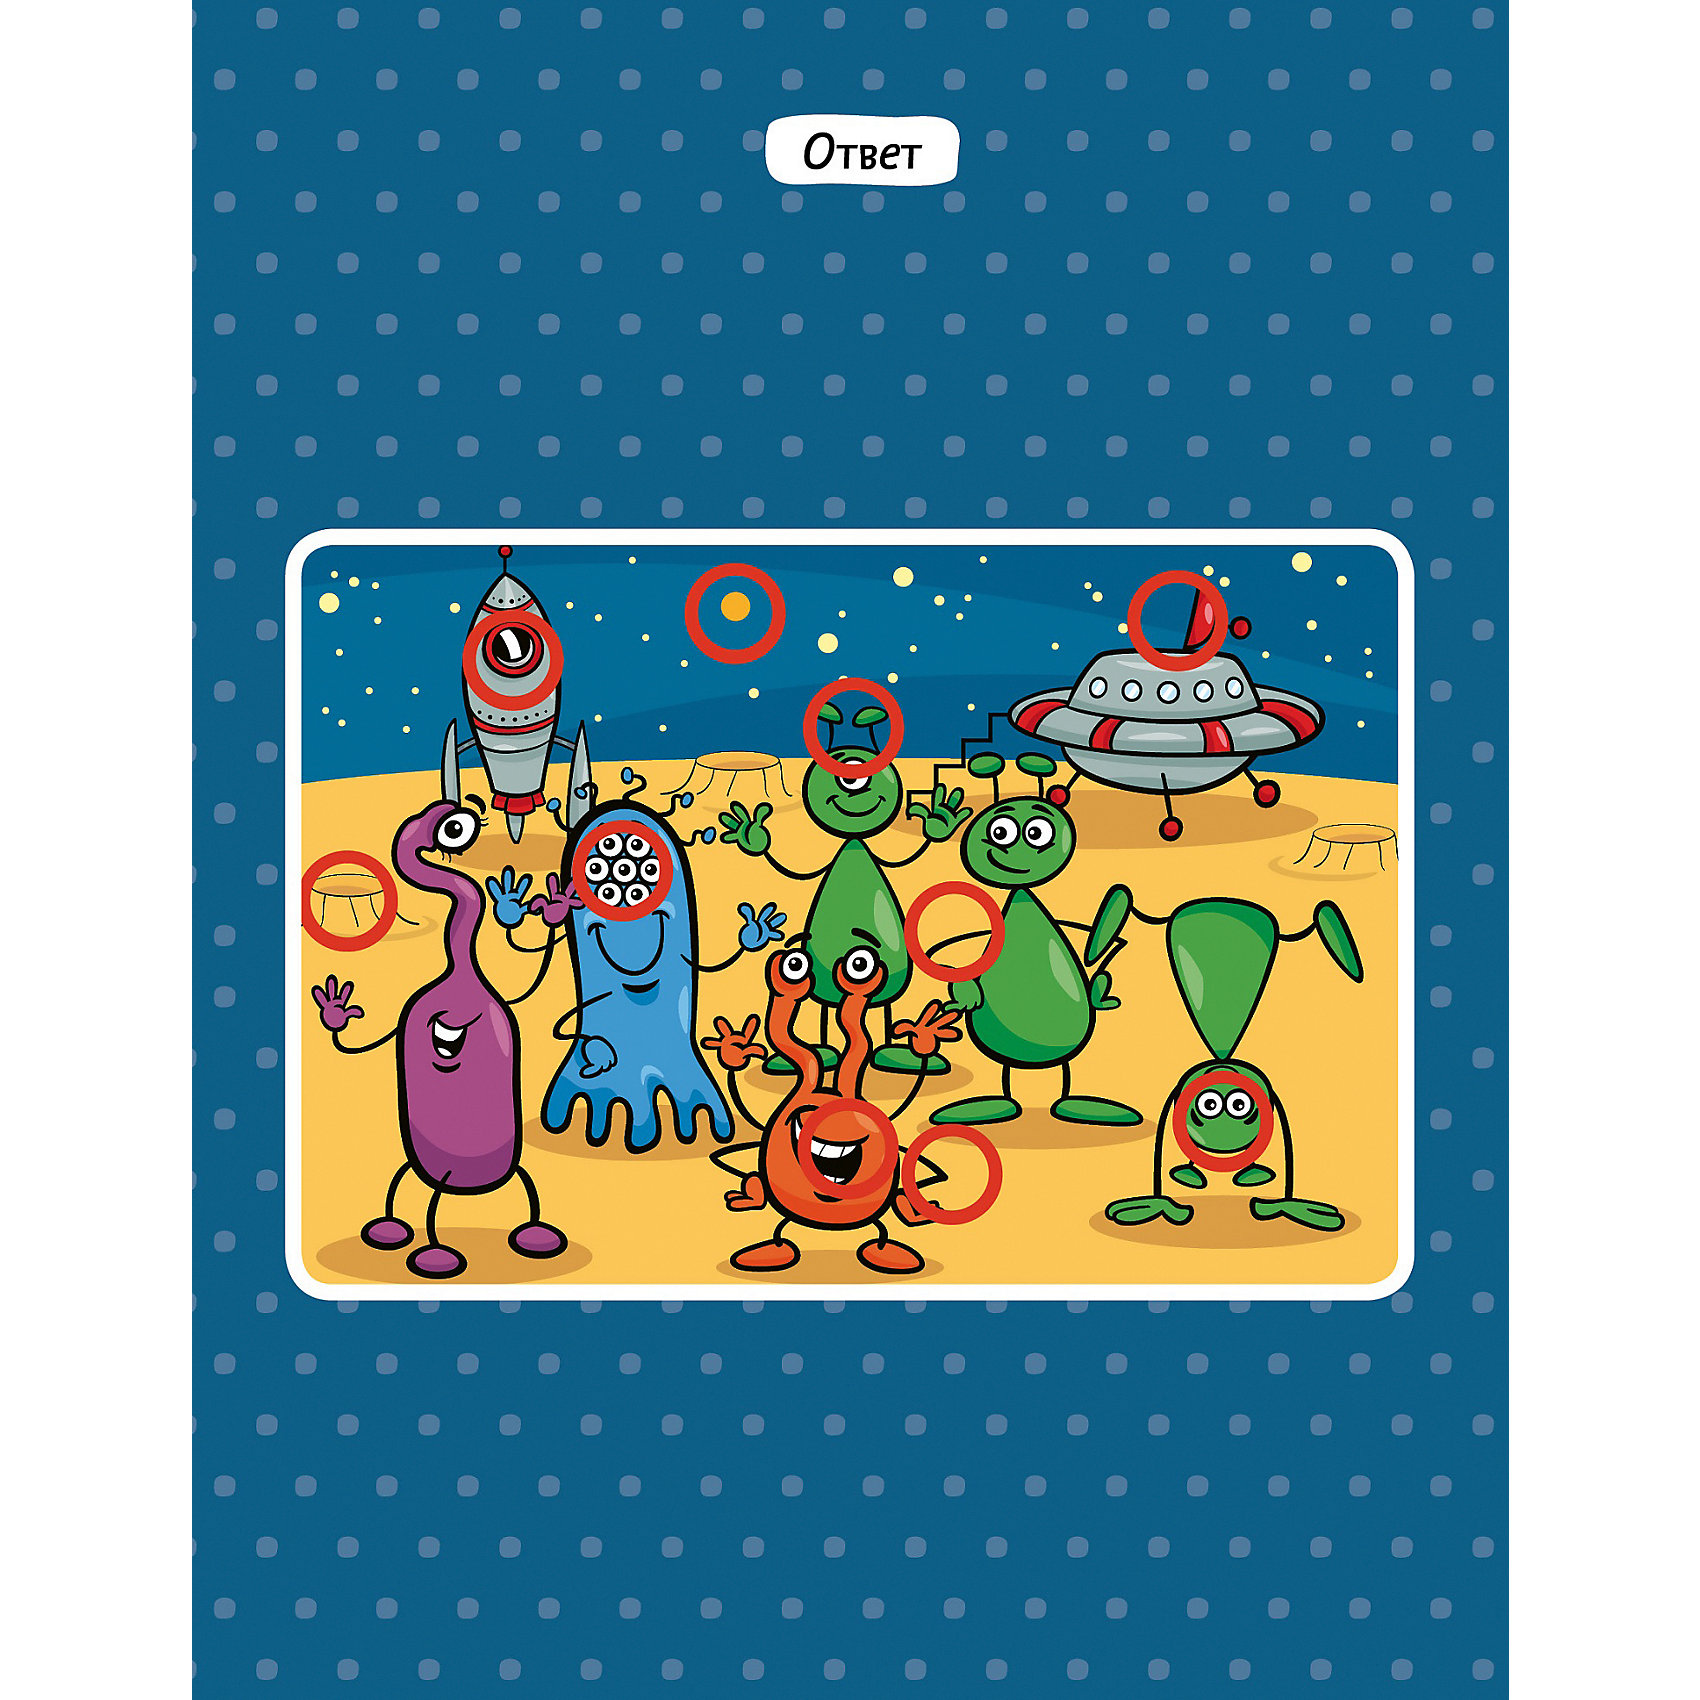 фото Книжка с играми "Рисуем и играем" 40 лабиринтов, головоломок и рисовалок для мальчиков Clever